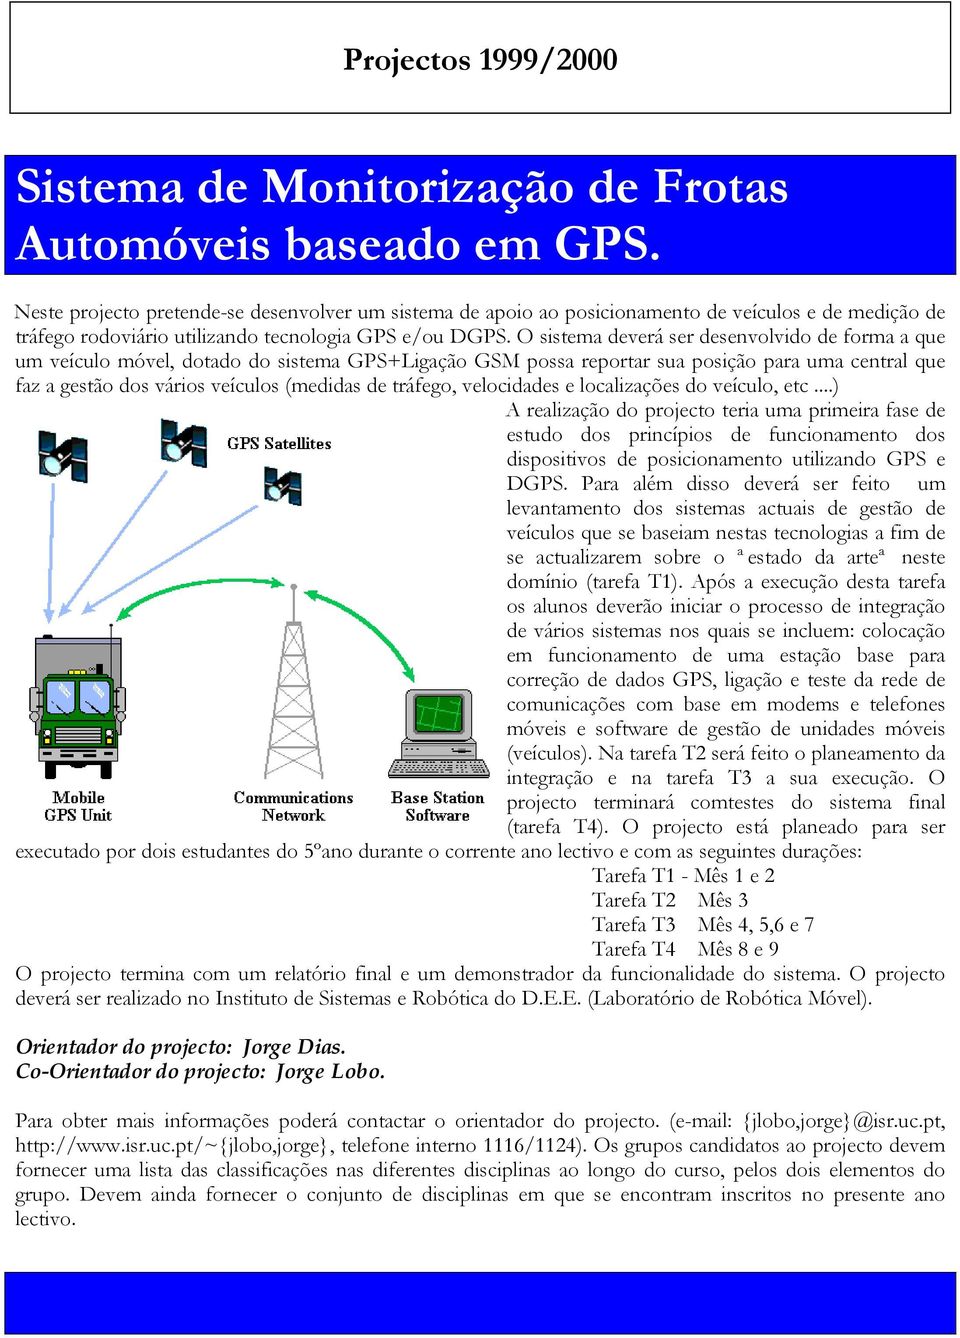 O sistema deverá ser desenvolvido de forma a que um veículo móvel, dotado do sistema GPS+Ligação GSM possa reportar sua posição para uma central que faz a gestão dos vários veículos (medidas de